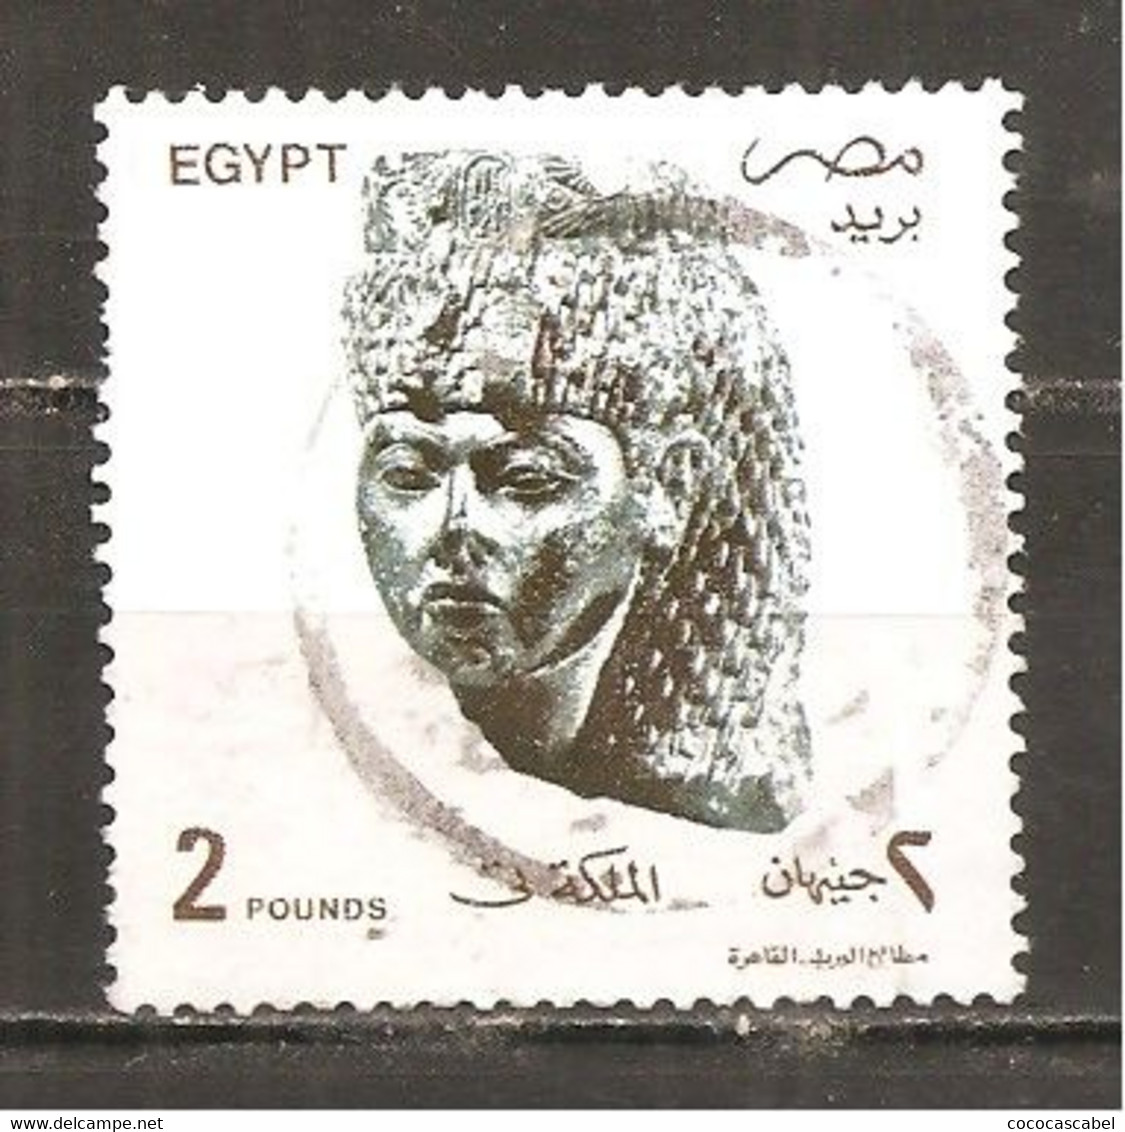 Egipto - Egypt. Nº Yvert  1484 (usado) (o) - Used Stamps